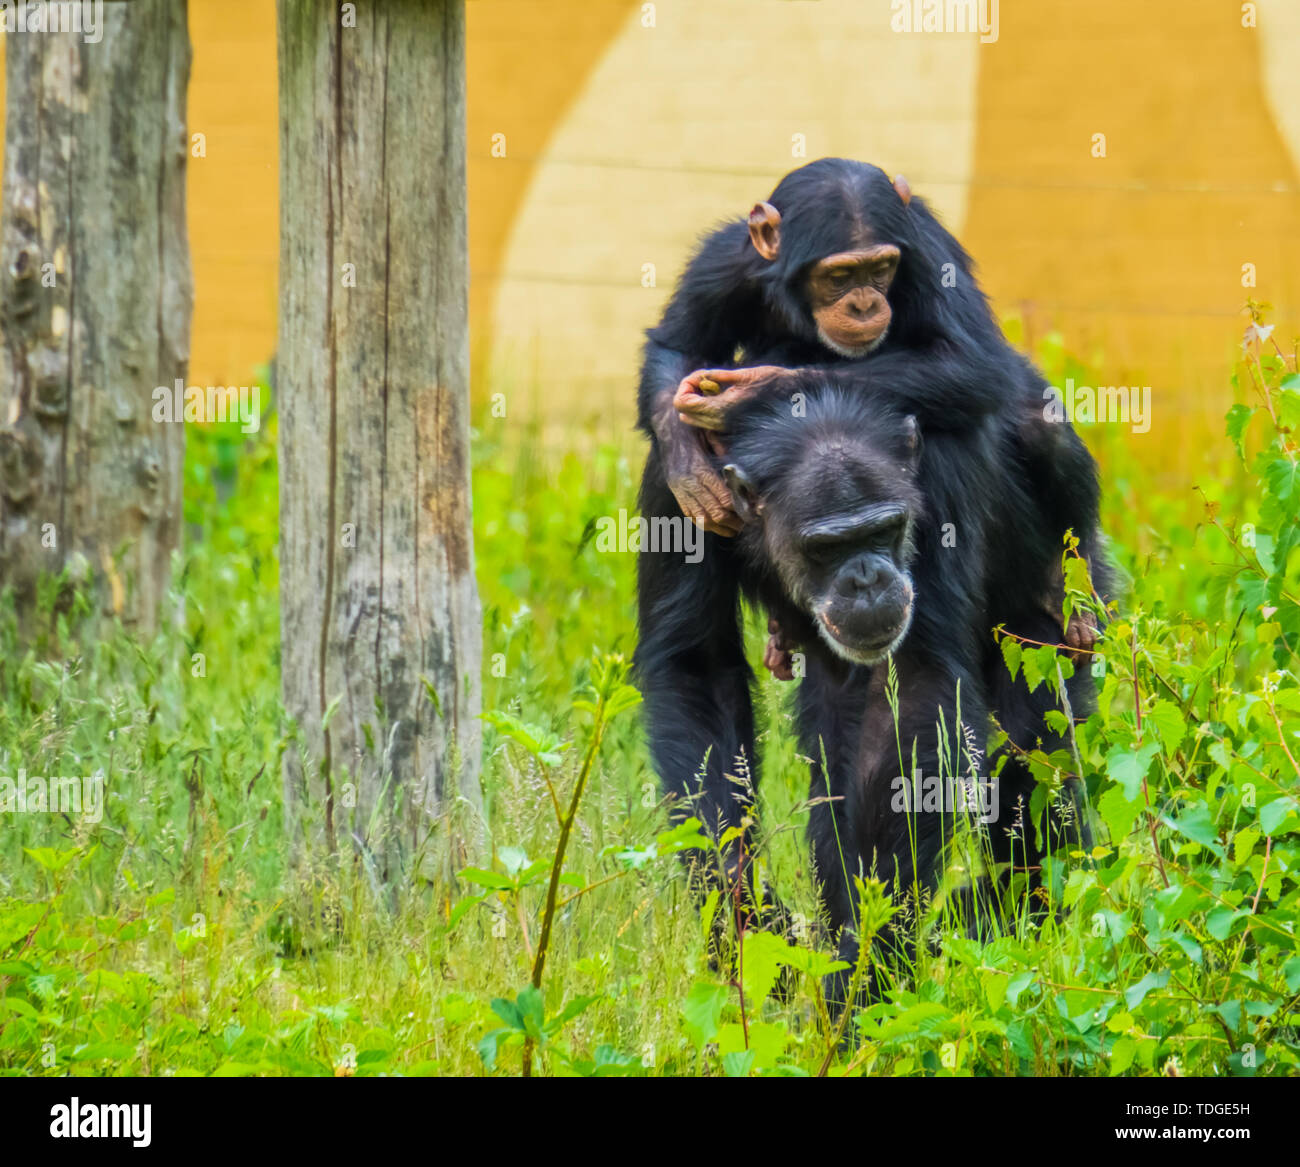 Portrait einer jungen westlichen Schimpansen auf dem Rücken eines erwachsenen Schimpansen, kritisch bedrohte Tierart aus Afrika Stockfoto